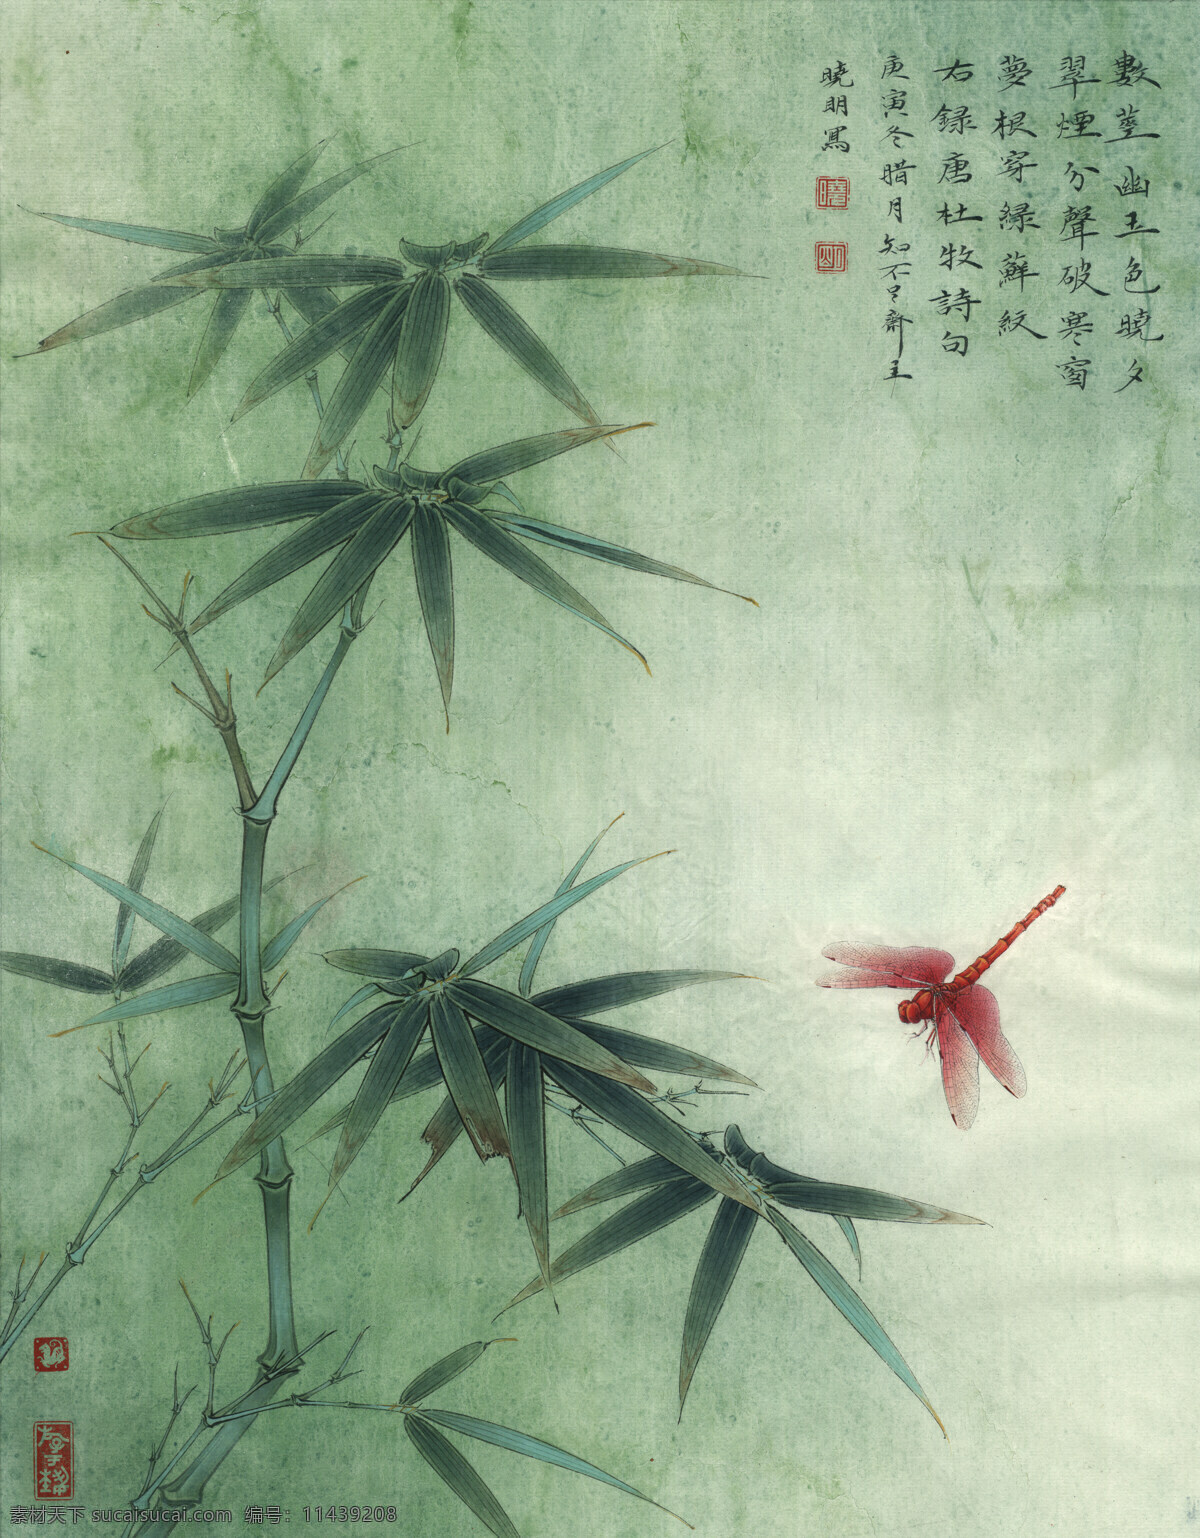 竹子 蜻蜓 国画 工笔画 美术绘画 文化艺术 李晓明 工笔 花鸟 高清 图 绘画书法